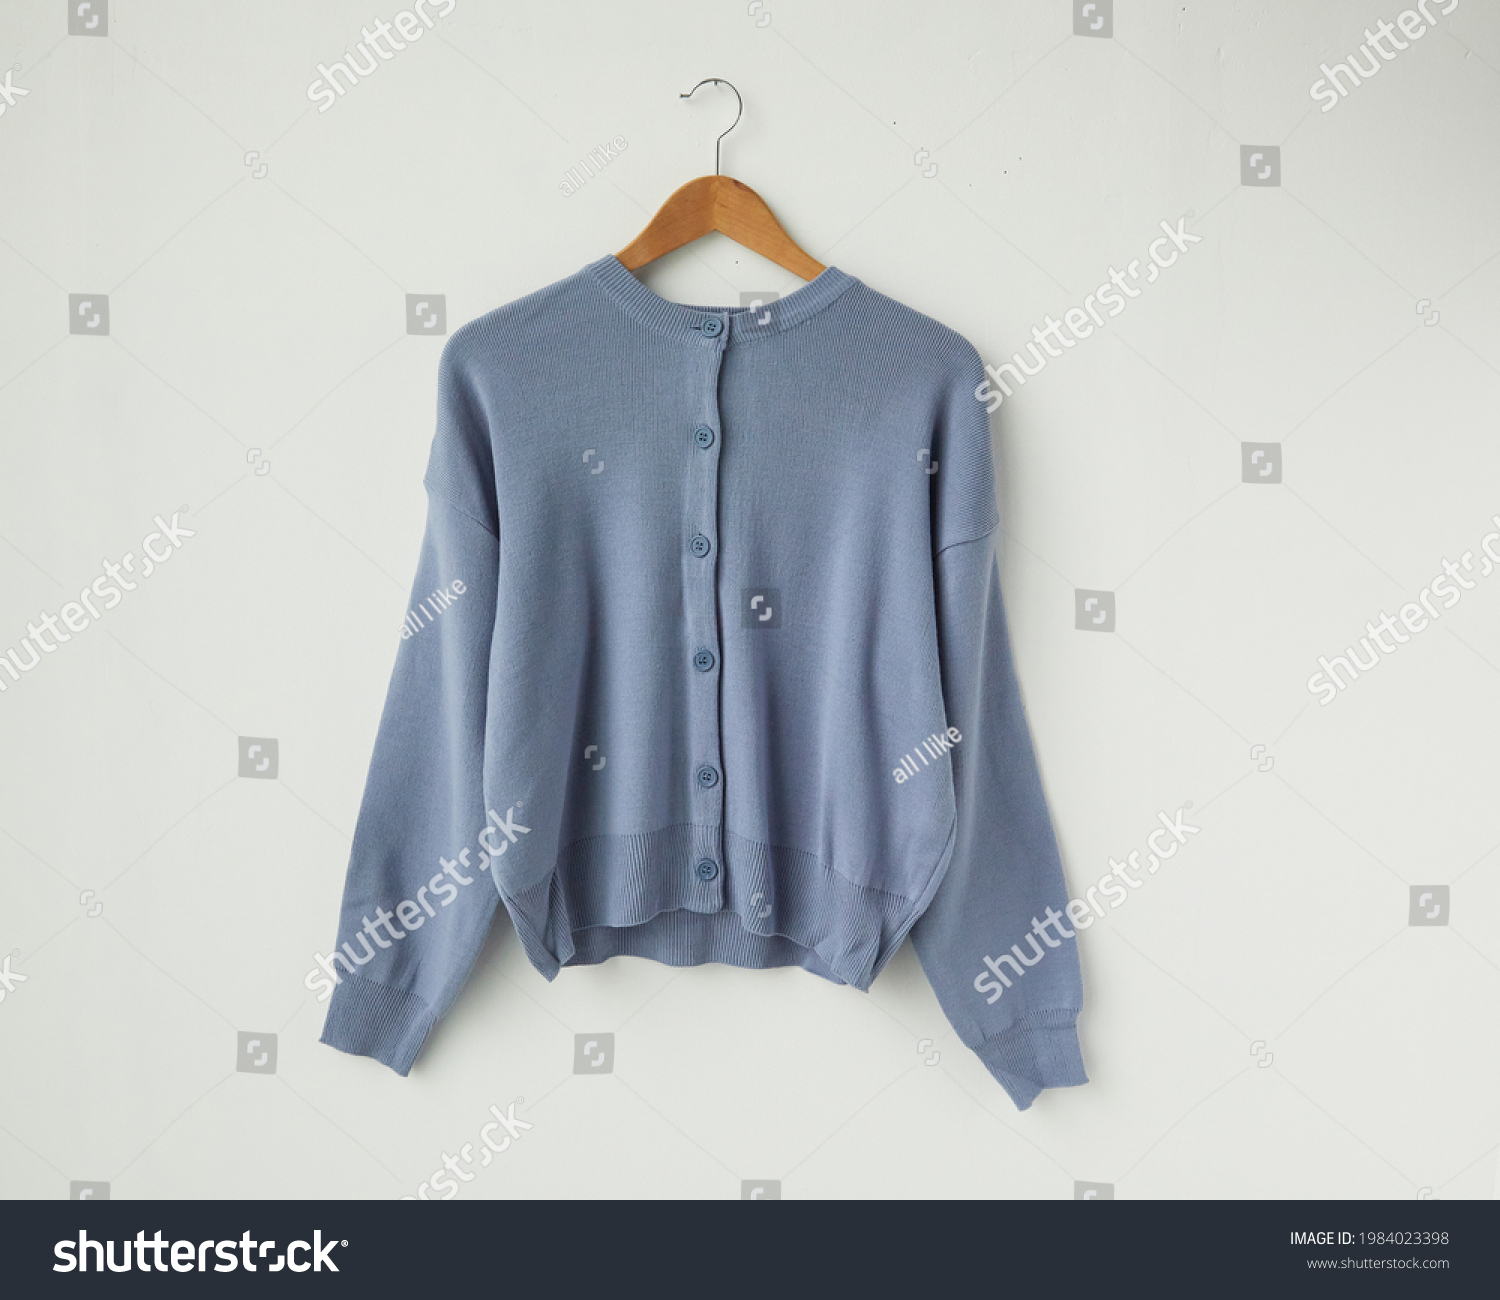 Sky blue cardigan jacket isolated on white background #1984023398